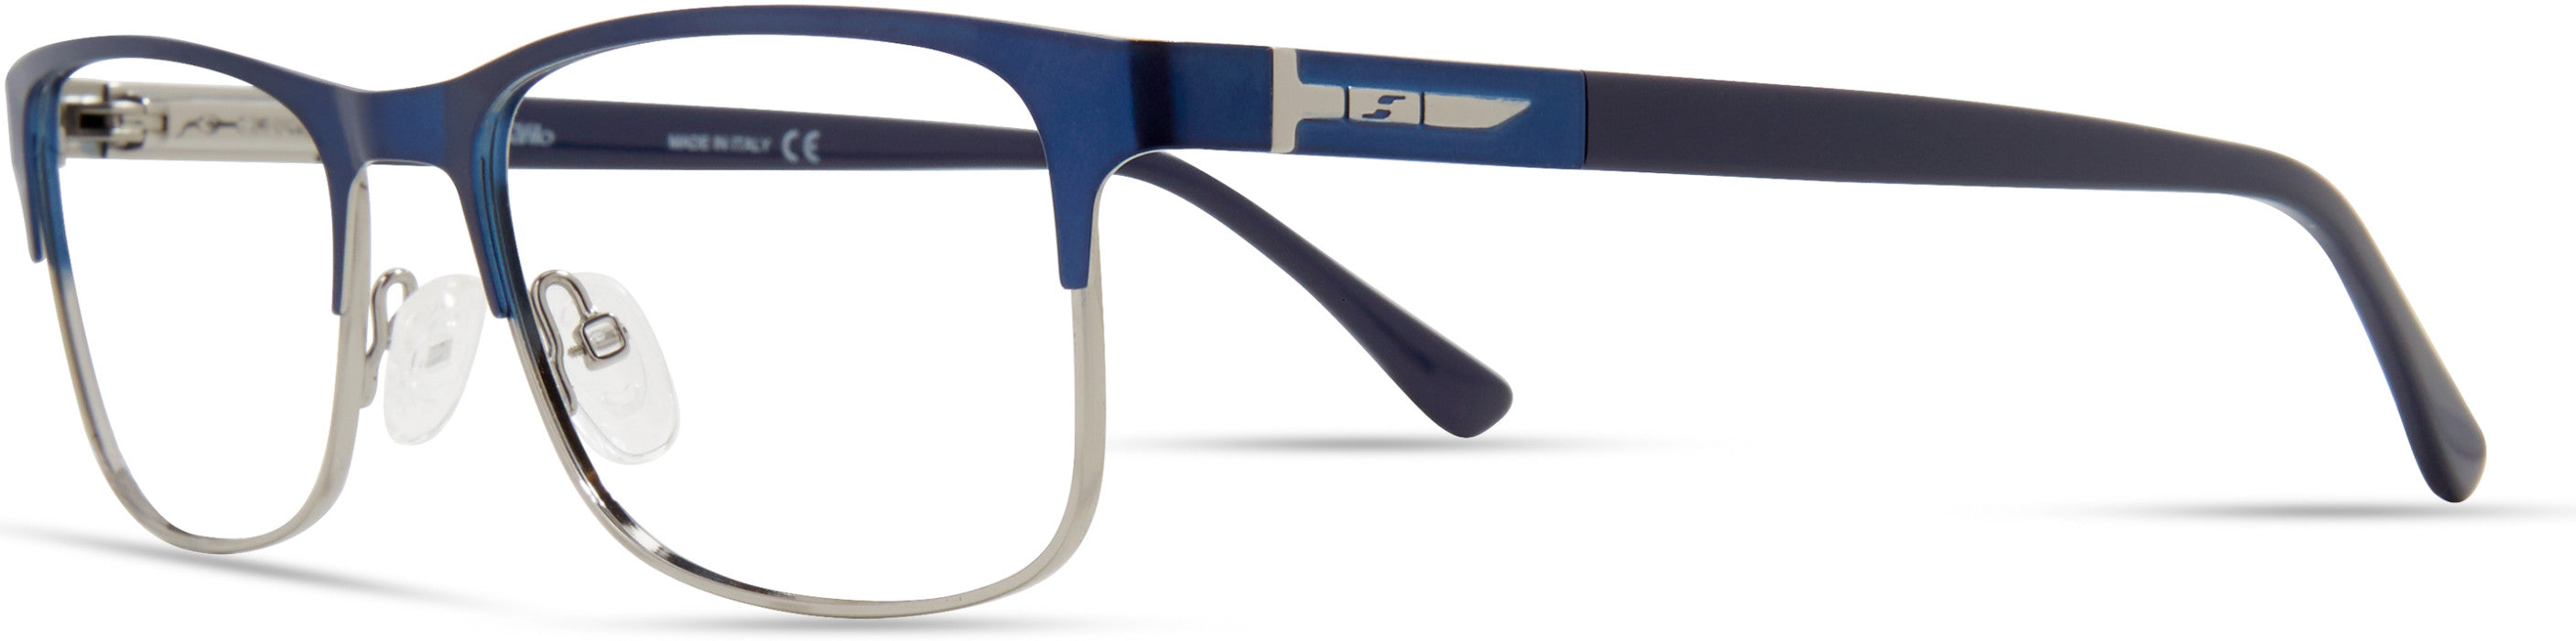  Elasta 7227 Rectangular Eyeglasses 0DTY-0DTY  Blue Ruthenium (00 Demo Lens)